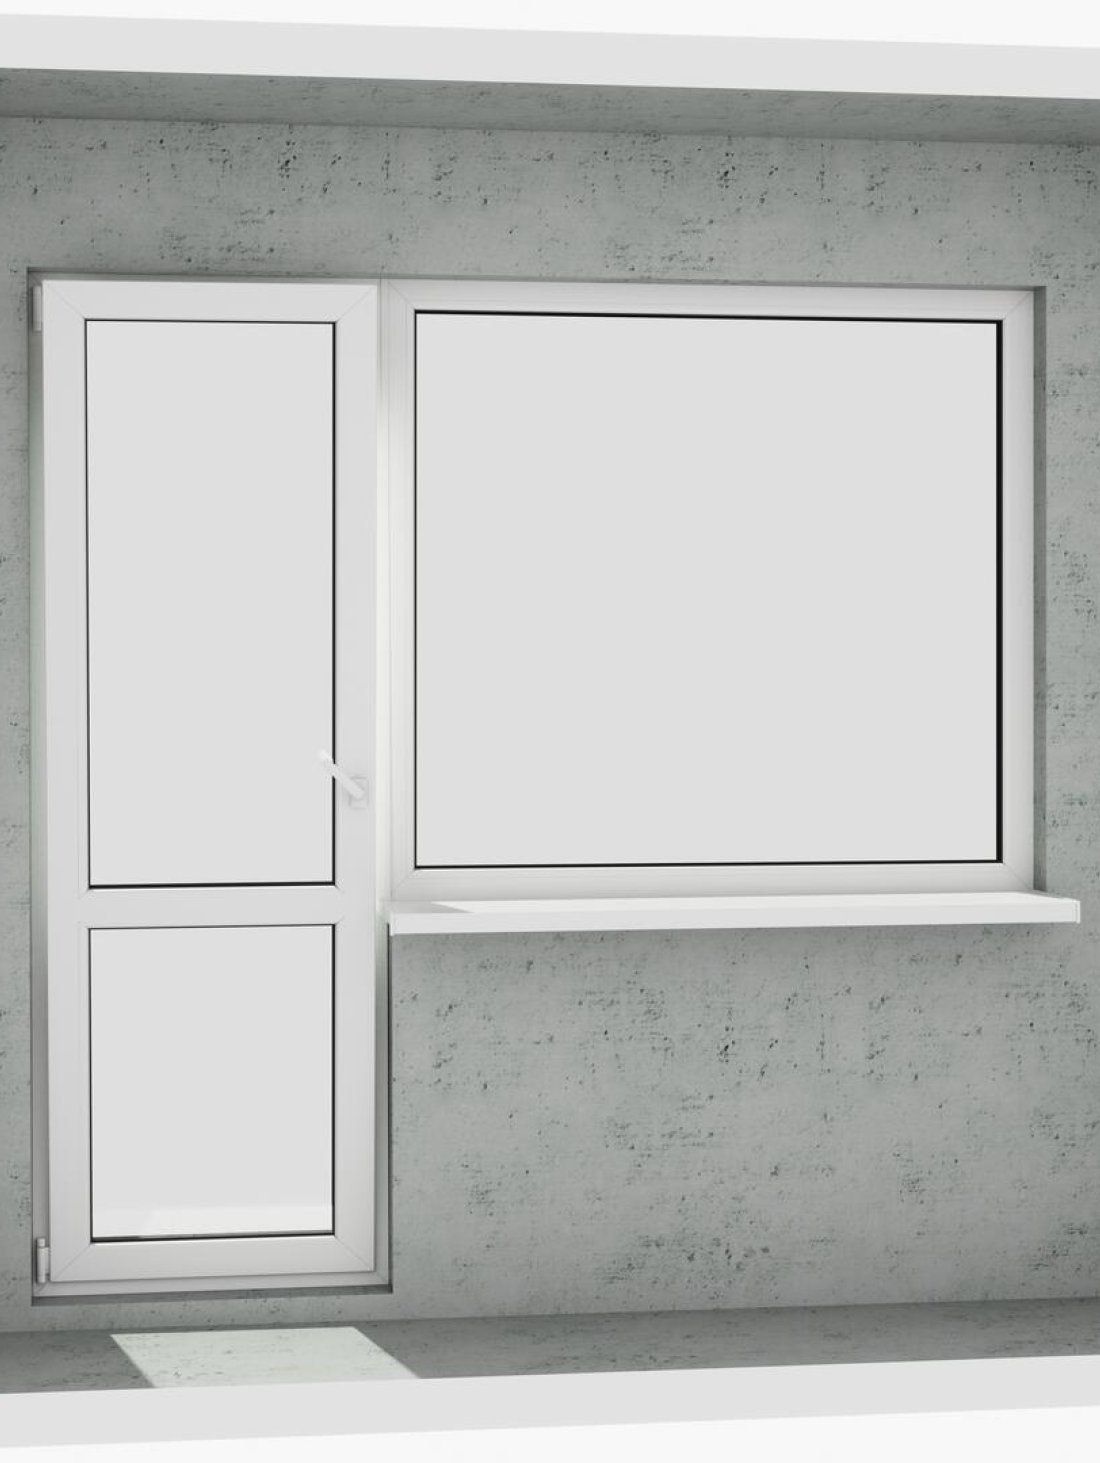 Вихід на лоджію (балкон): класичний білий металопластиковий балконний блок (в двері є режим провітрювання, вікно не відкривається)